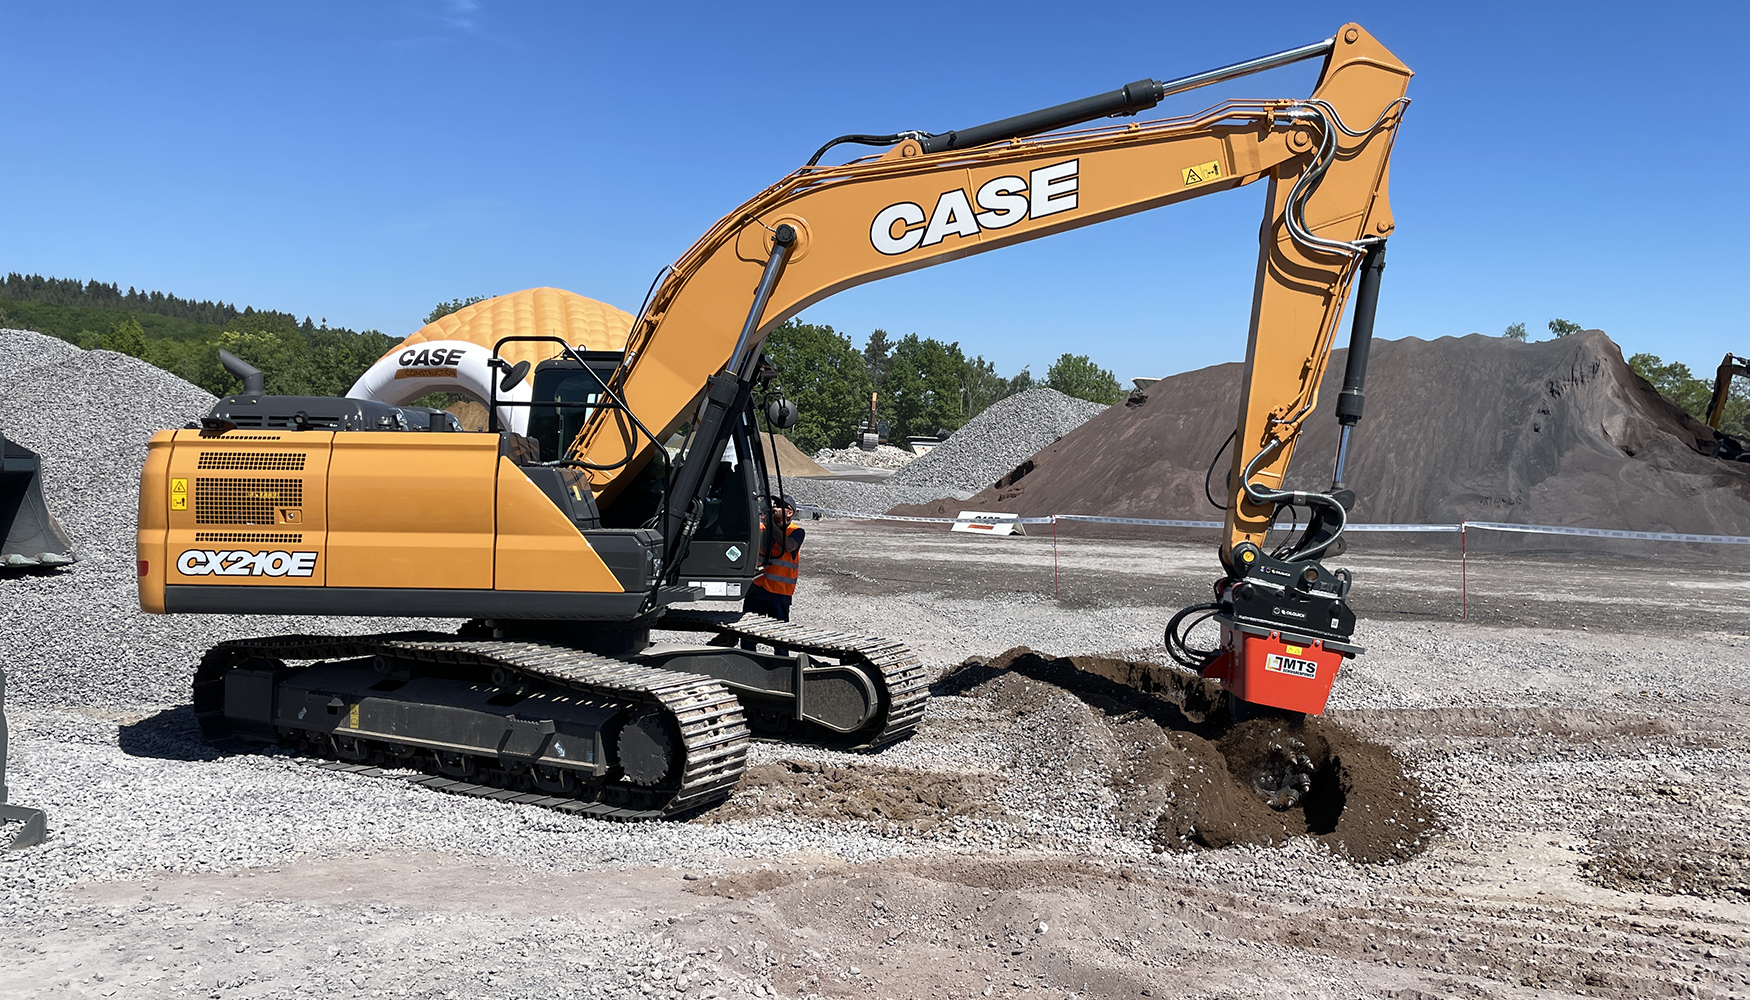 Tambin se pudieron ver las nuevas excavadoras CX250E y CX210E en diferentes aplicaciones